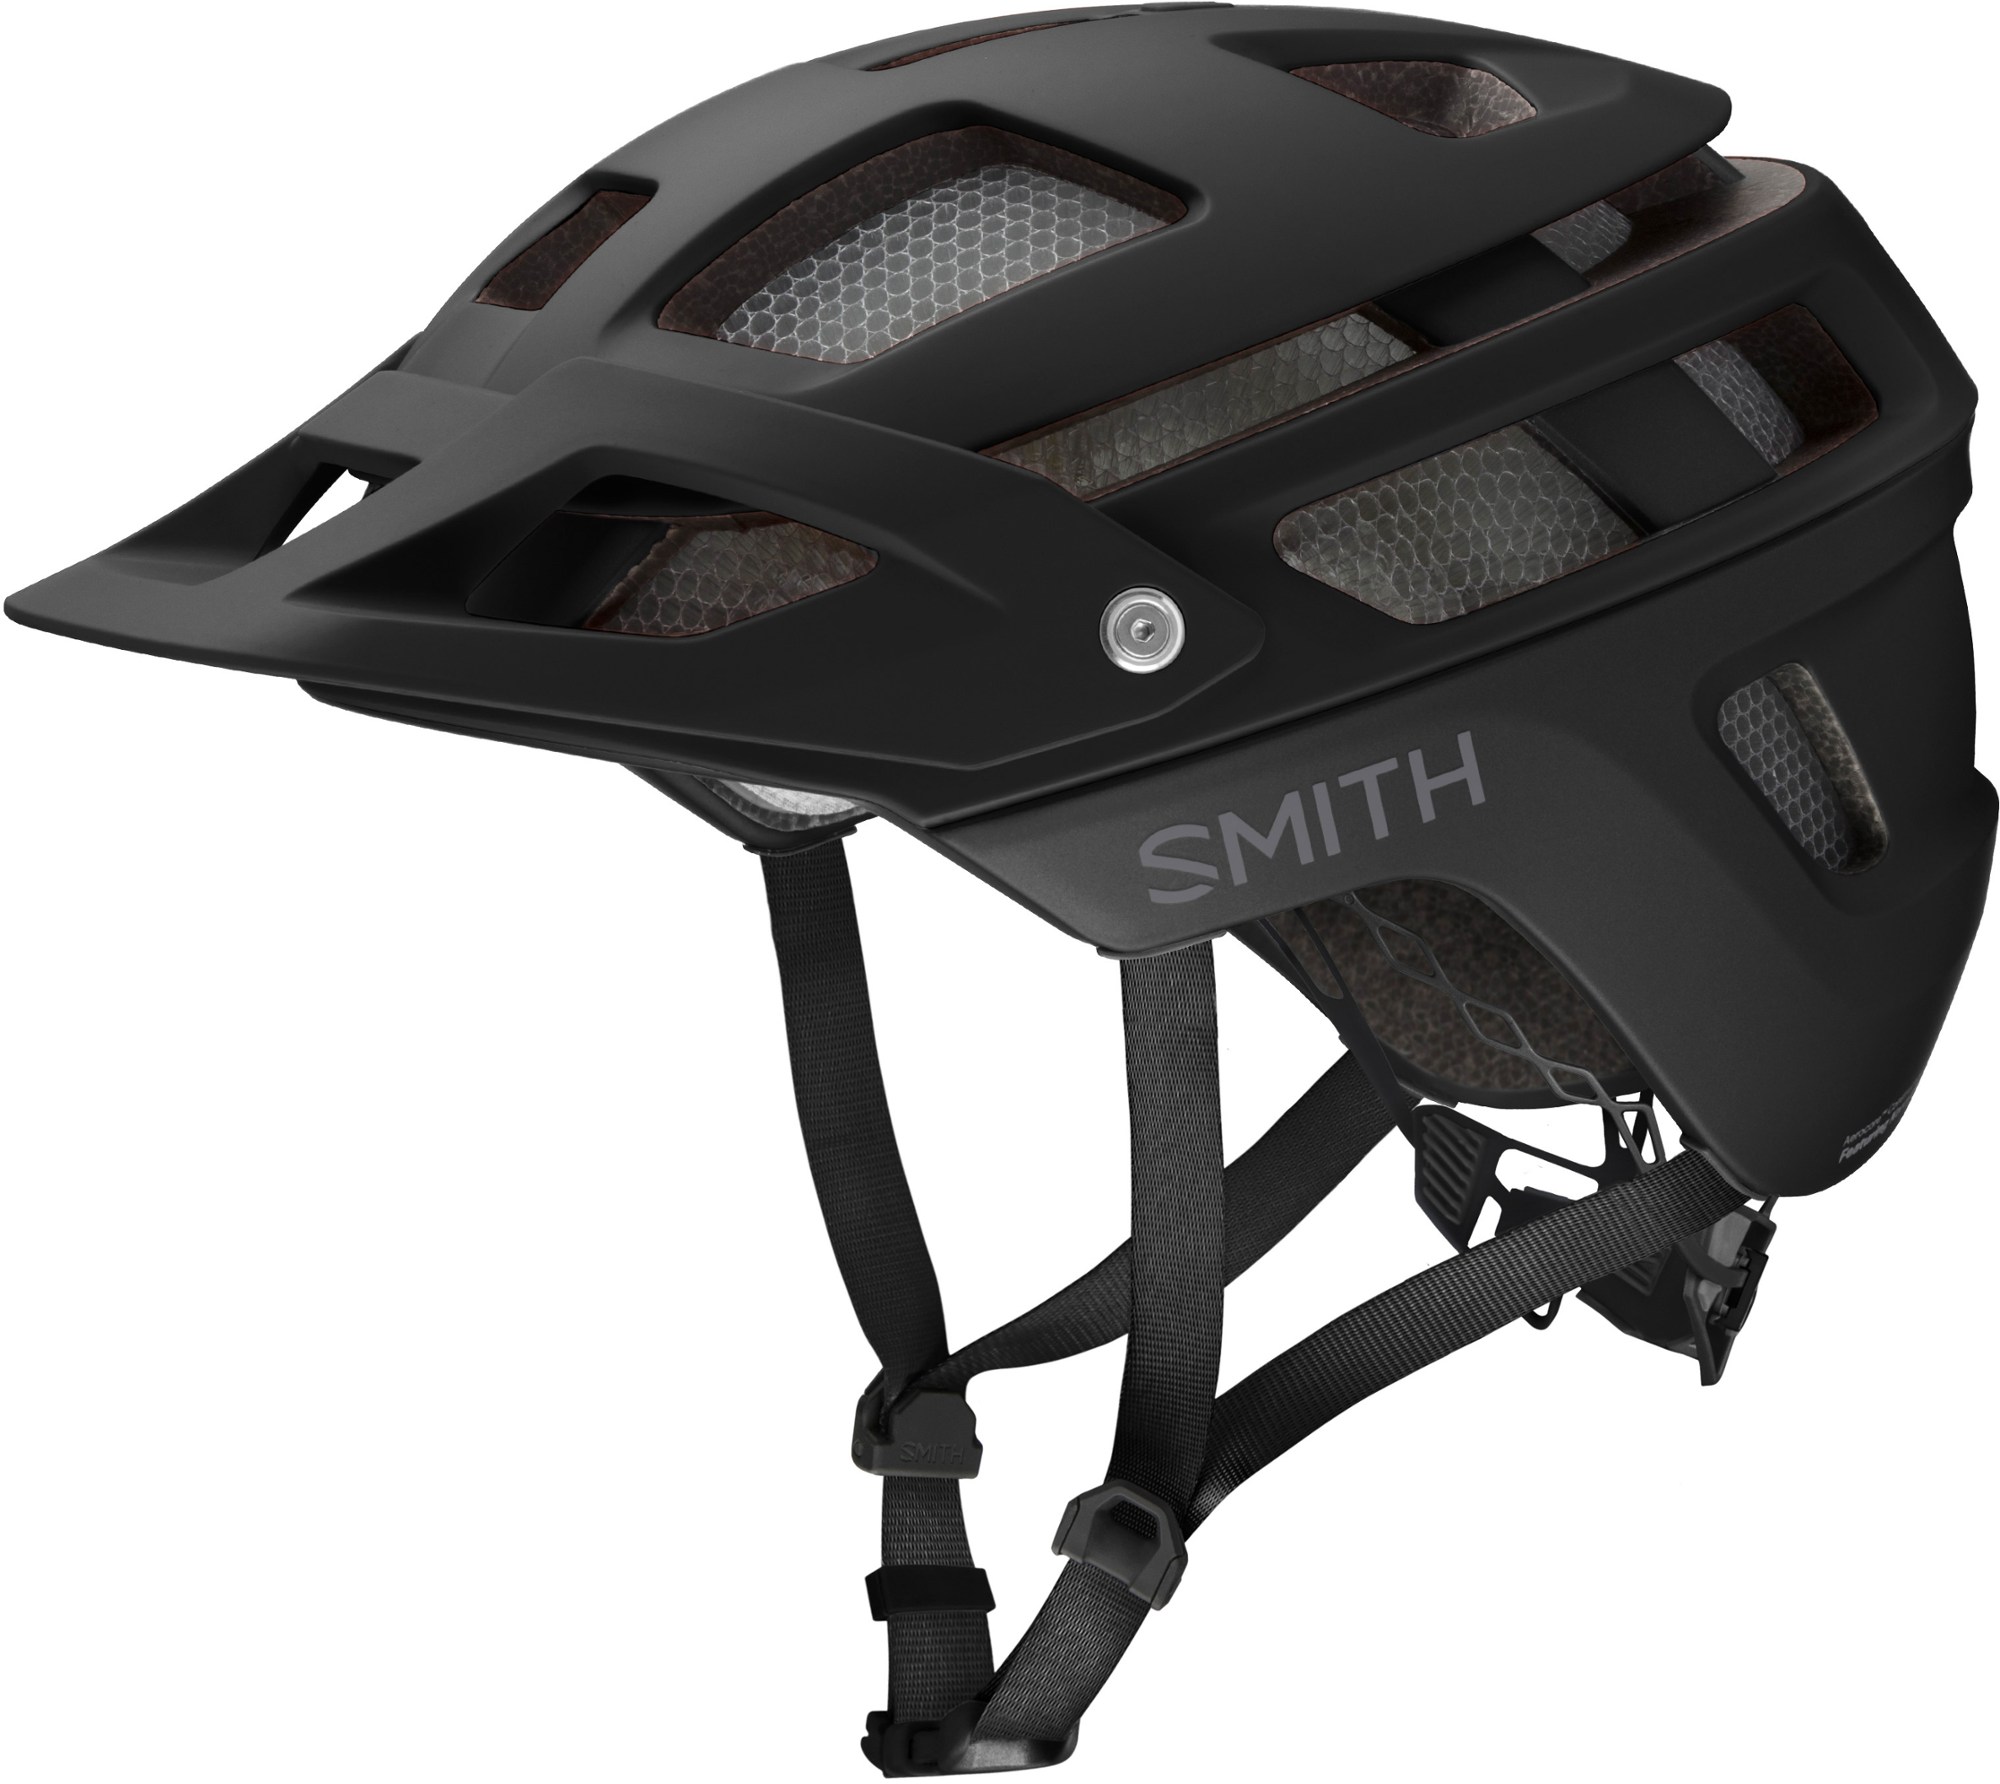 Велосипедный шлем Forefront 2 MIPS Smith, черный